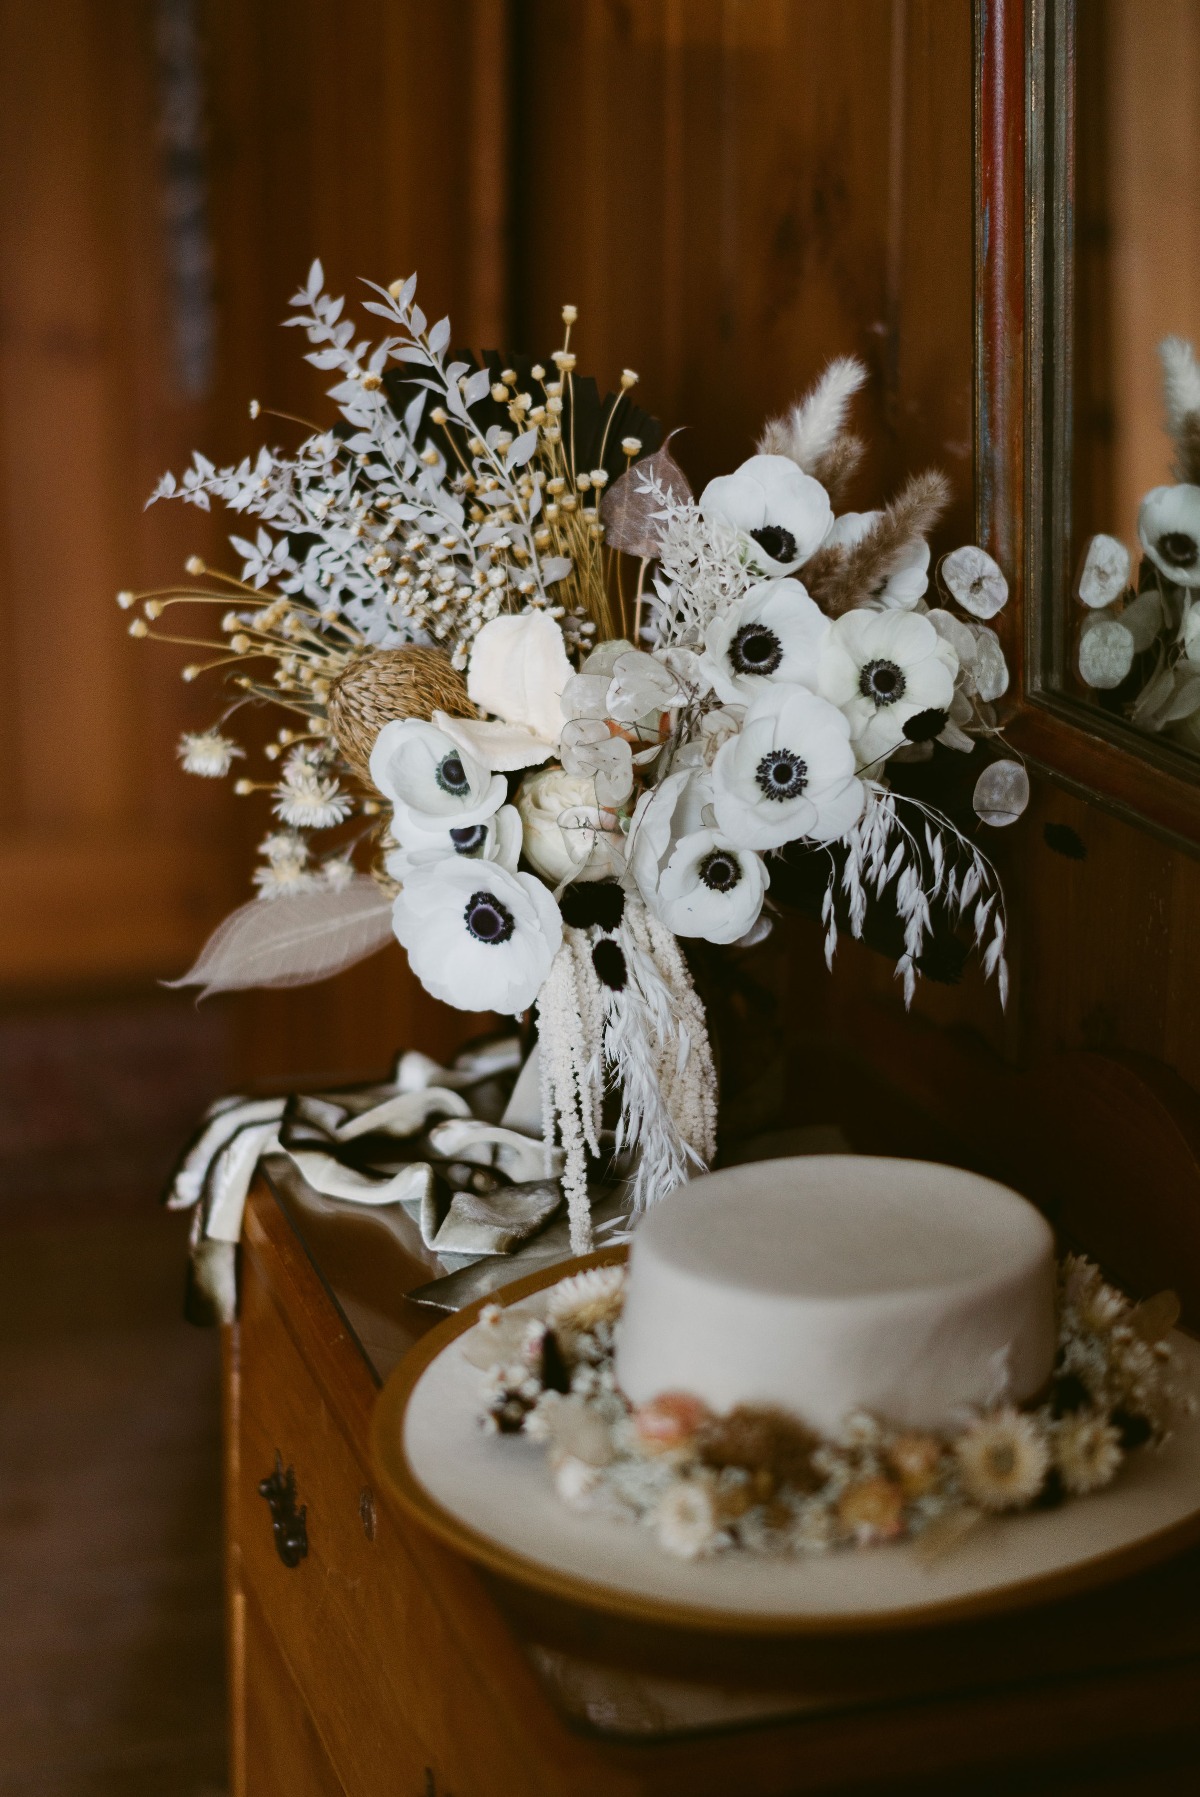 anemone wedding bouquet